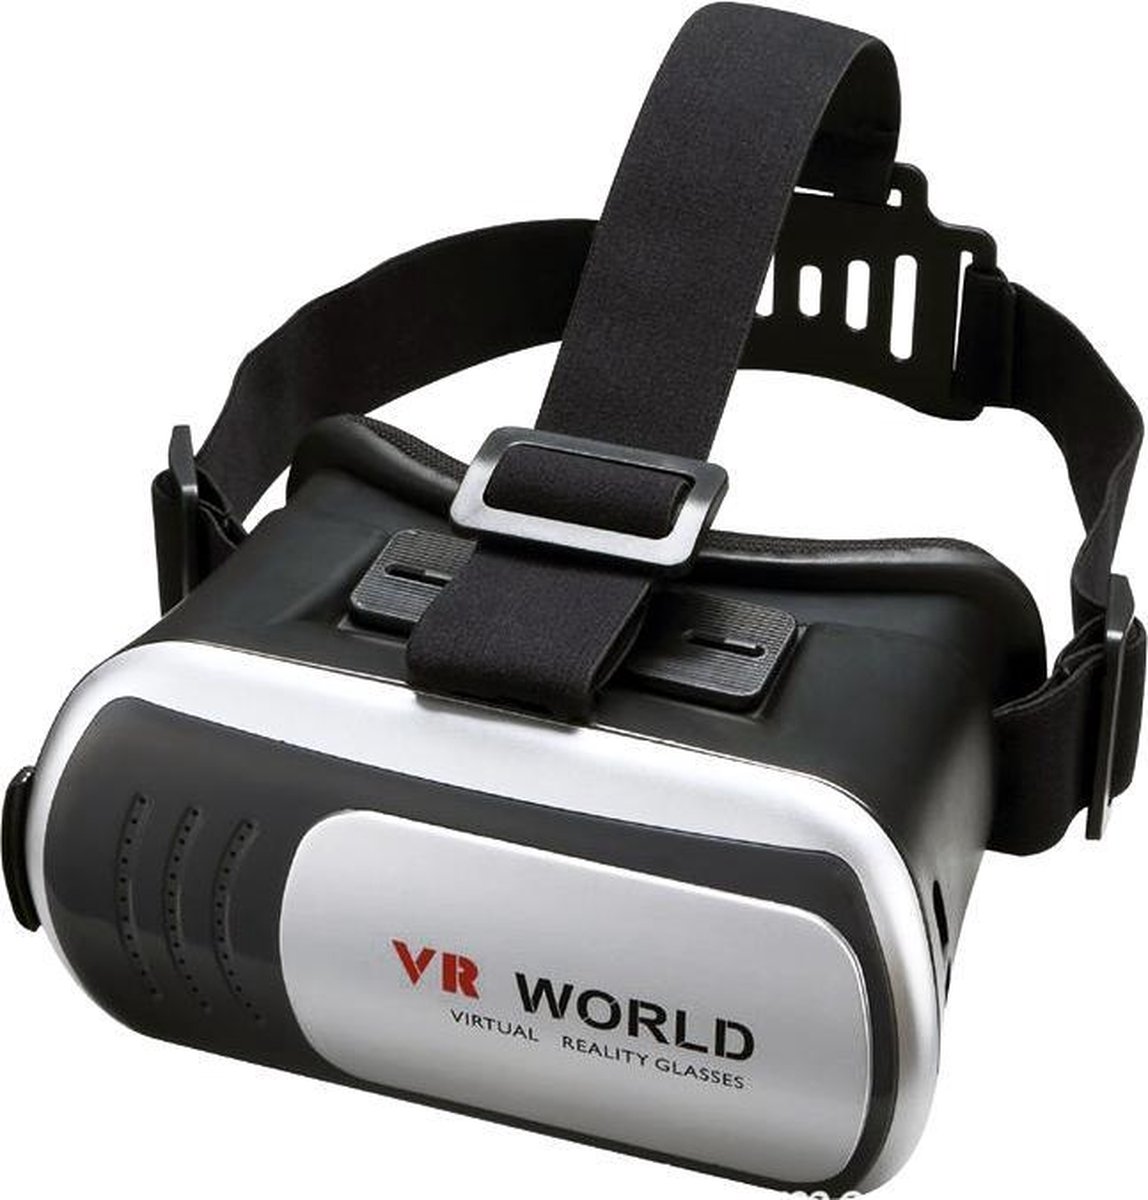 Beste VR bril